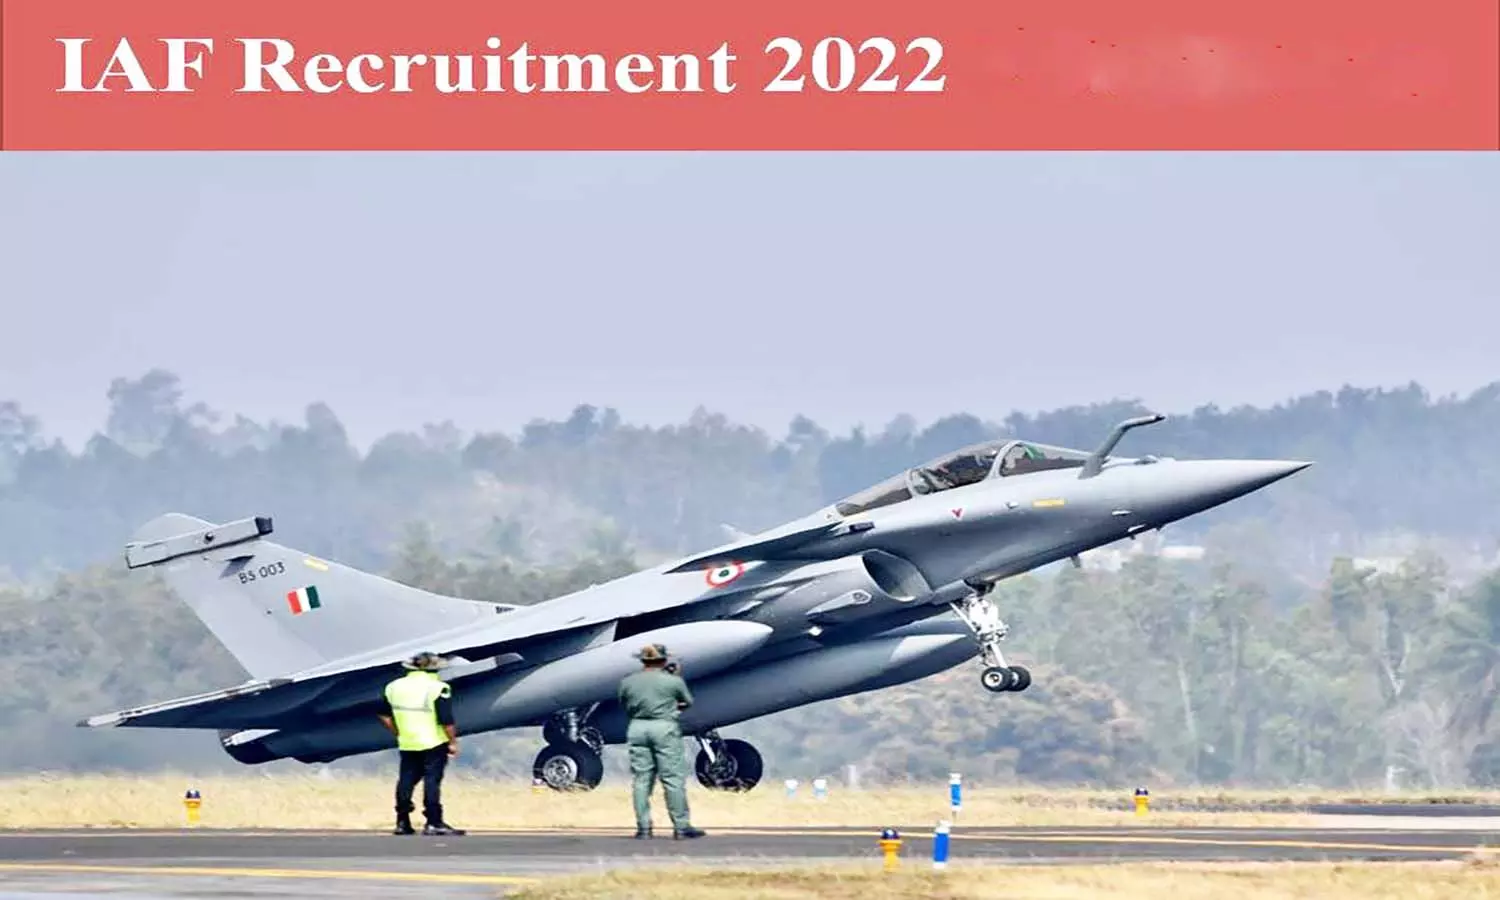 इंडियन एयरफोर्स में निकली भर्ती, अभ्यर्थी पद व योग्यता जान लें